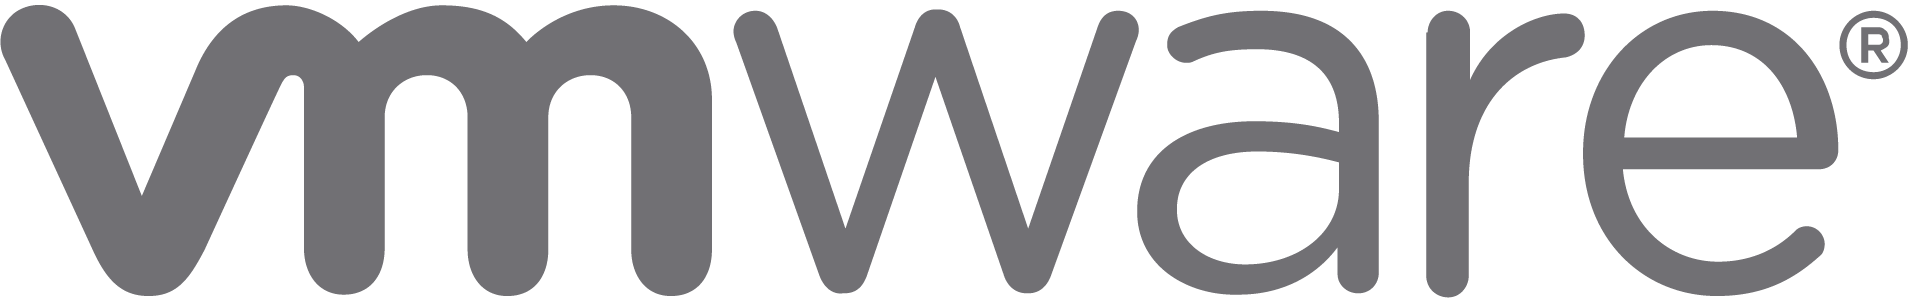 vmware-logo-